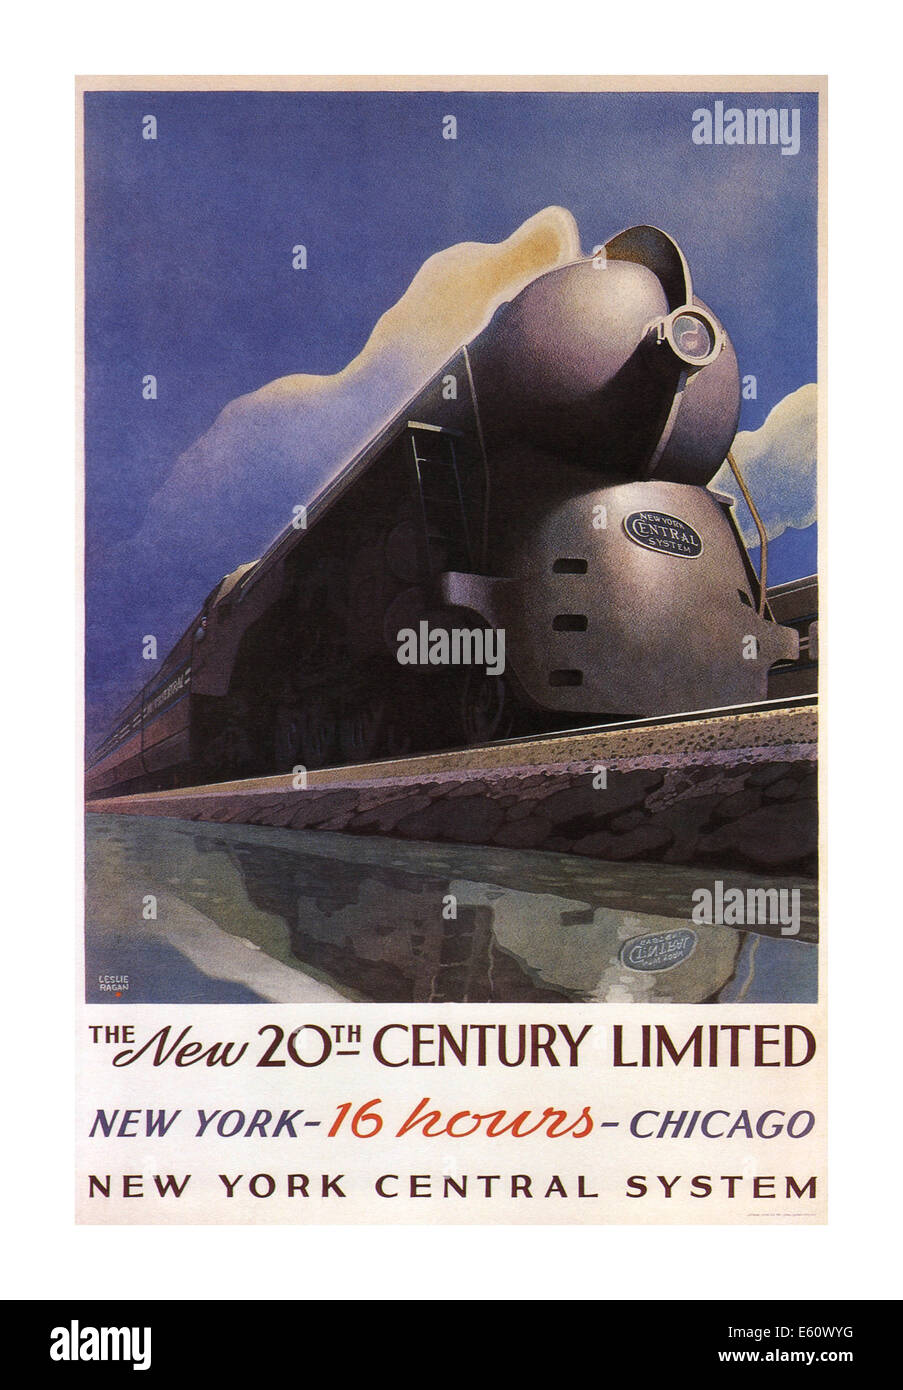 1930 vintage American Railway poster la promotion de New York à Chicago en 16 heures Banque D'Images